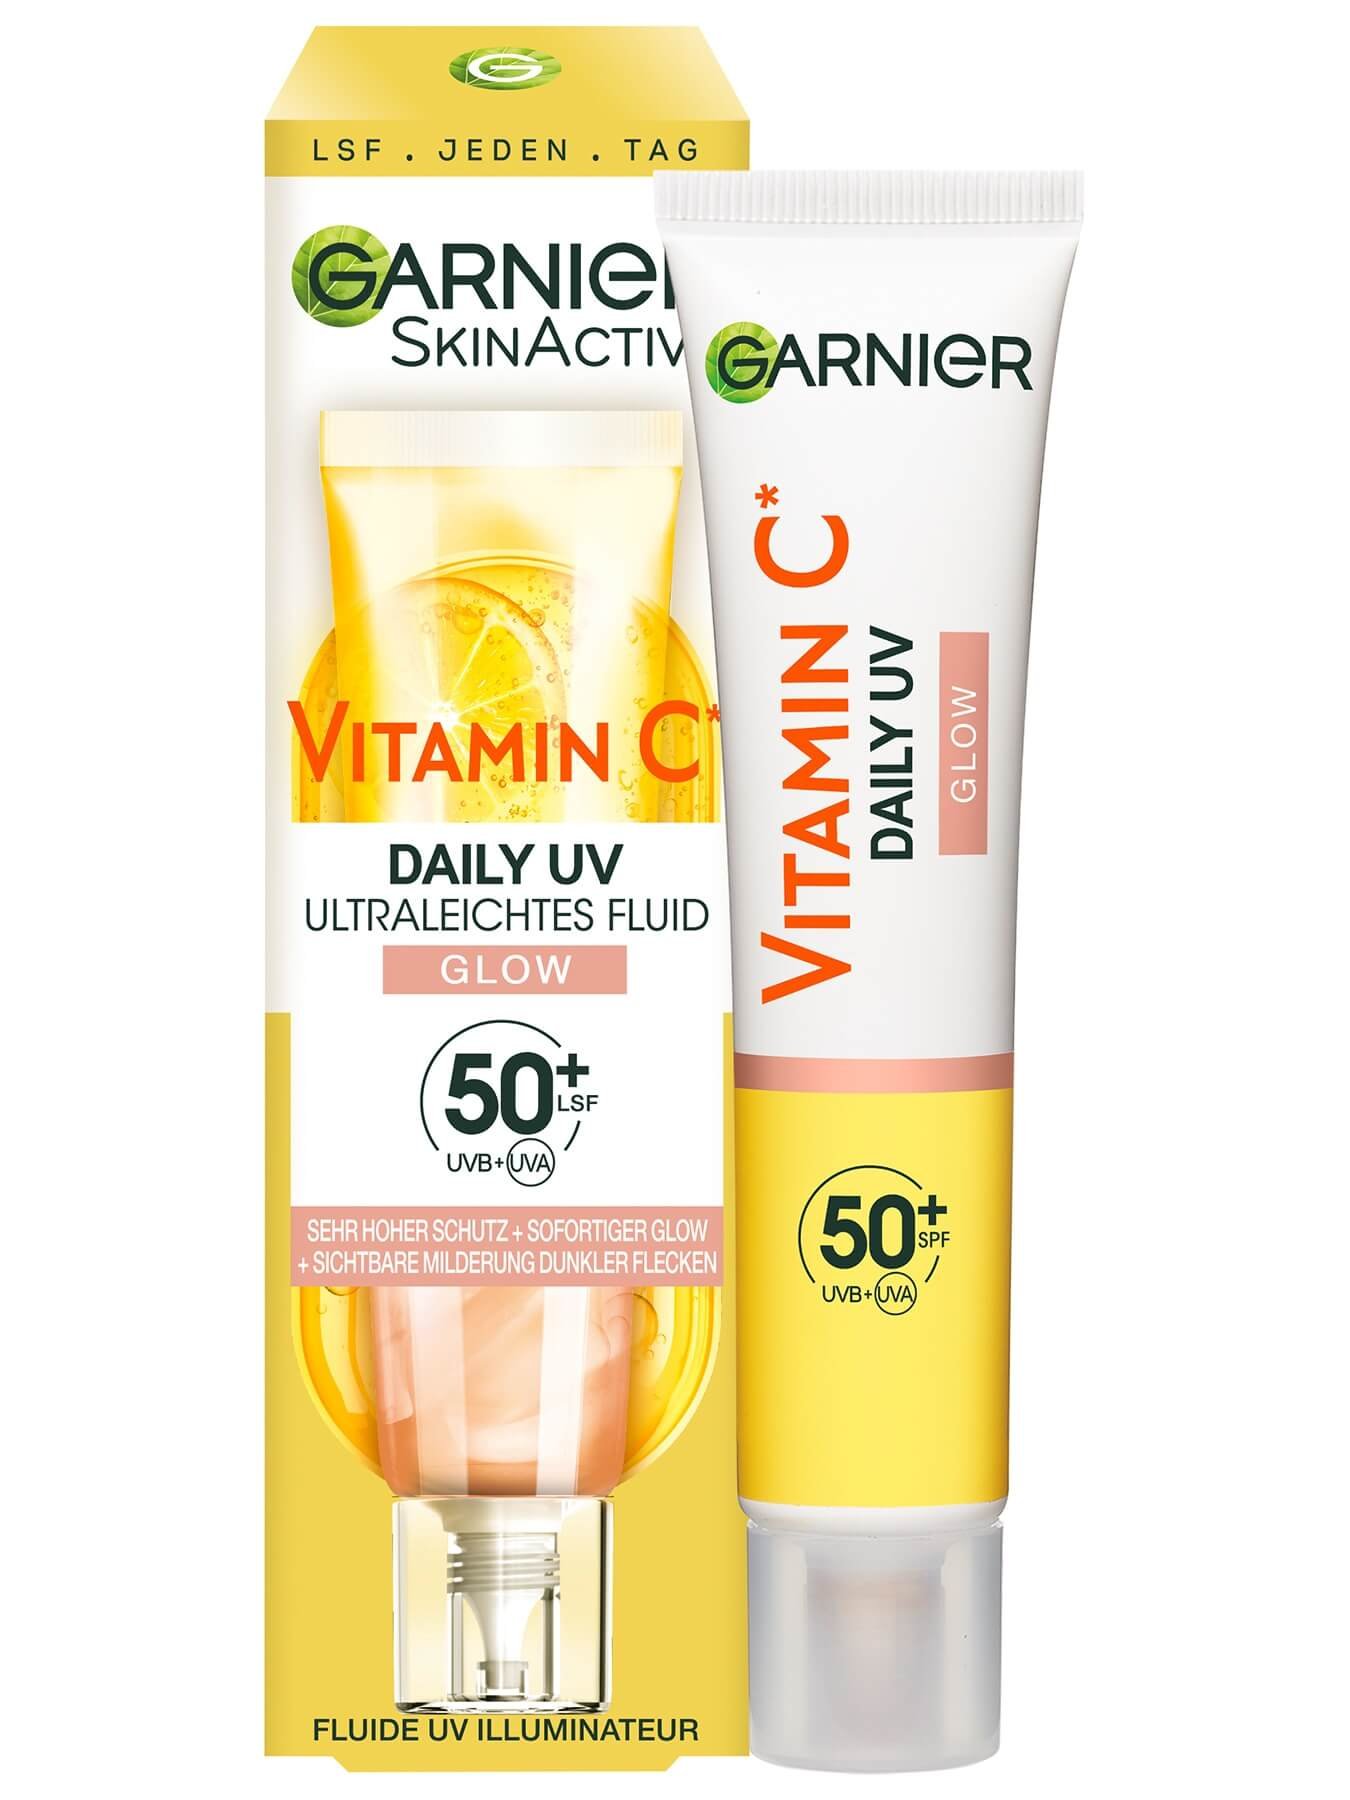 SkinActive Vitamin C Tägliches Sonnenfluid Glow mit LSF 50+ Verpackungsbild und Produkt